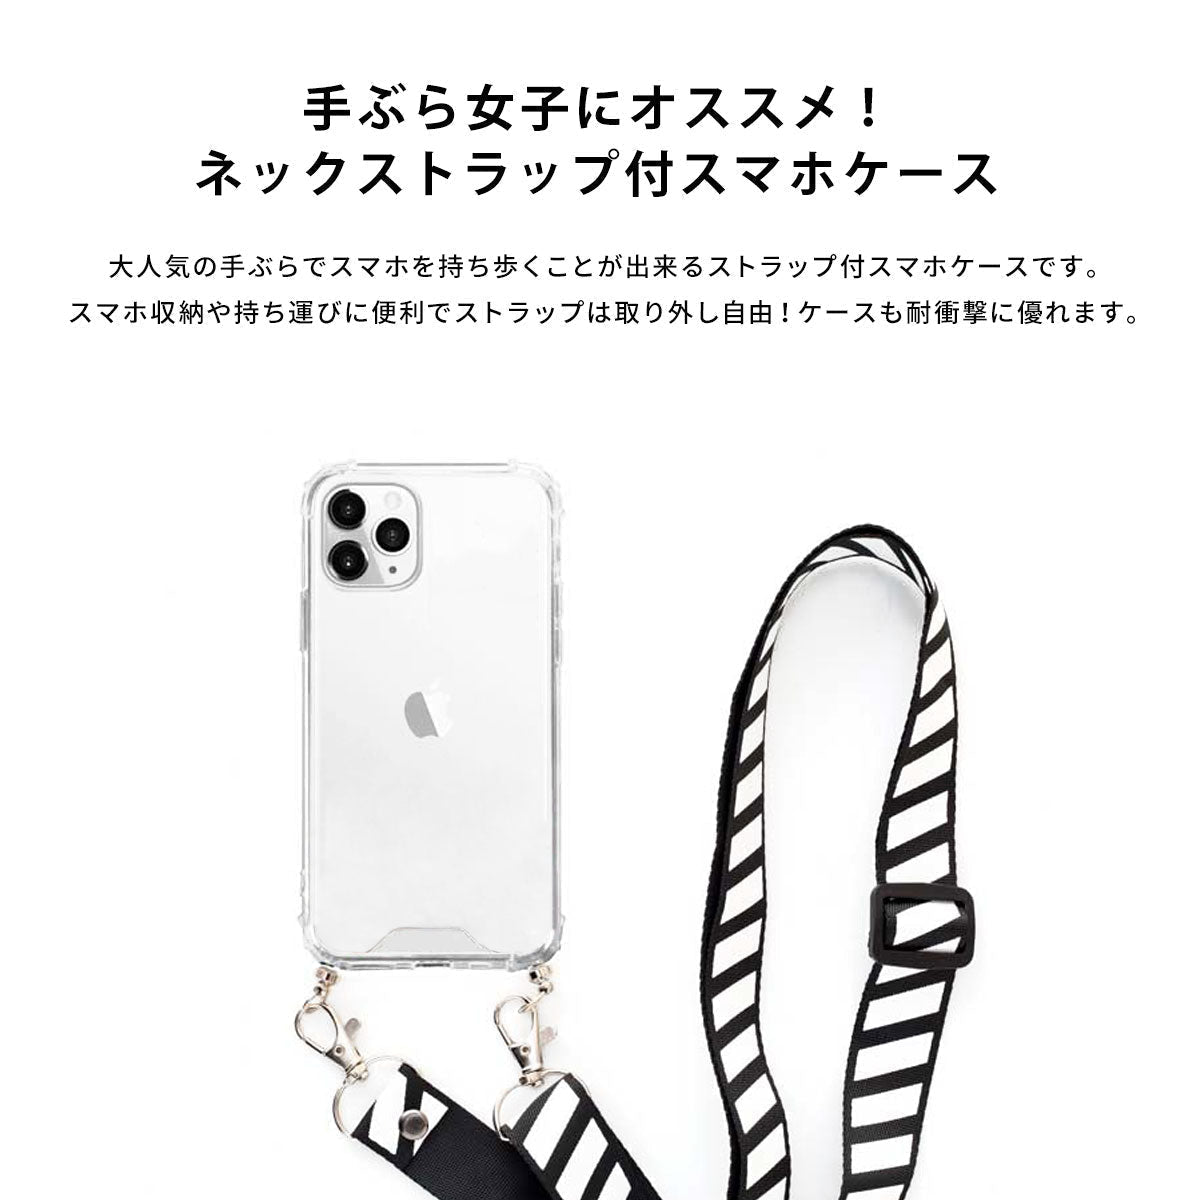 ネックストラップ スマホケース  iPhone13 iPone12 かわいい おしゃれ  ネックストラップ付き スイカ 夏 名入れ